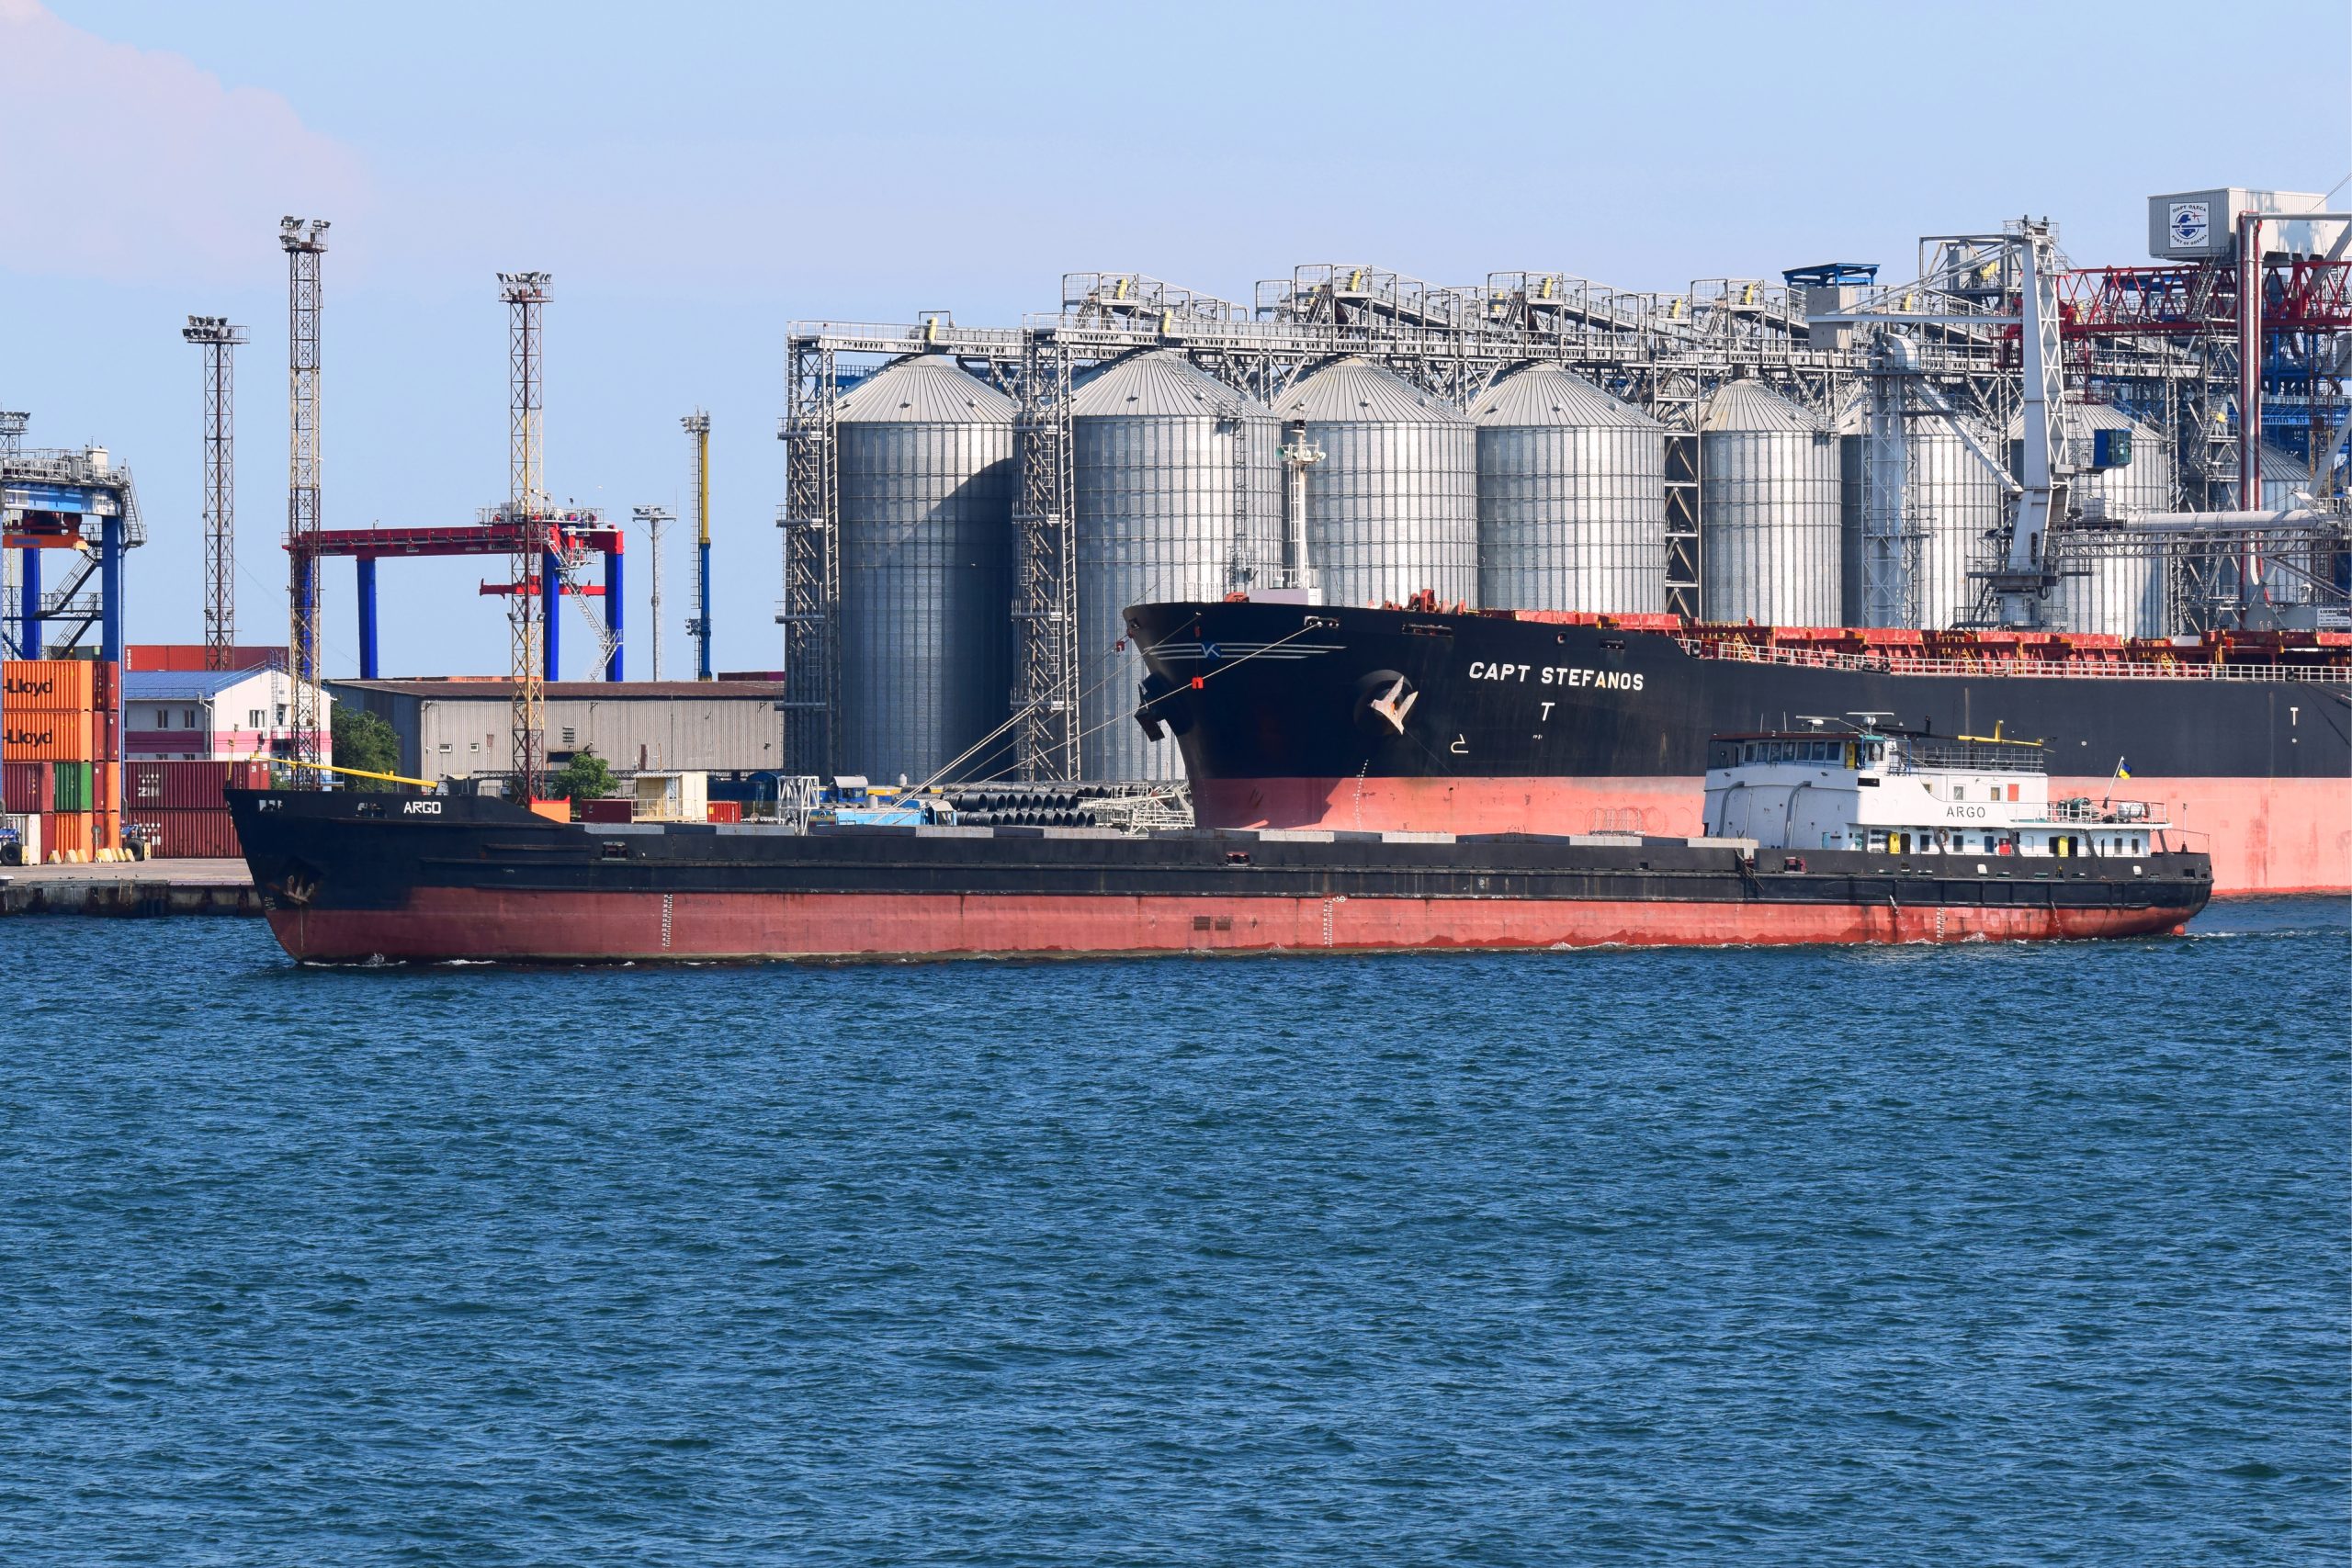 500 seafarers still trapped on vessels stuck in Ukrainian ports, says ICS